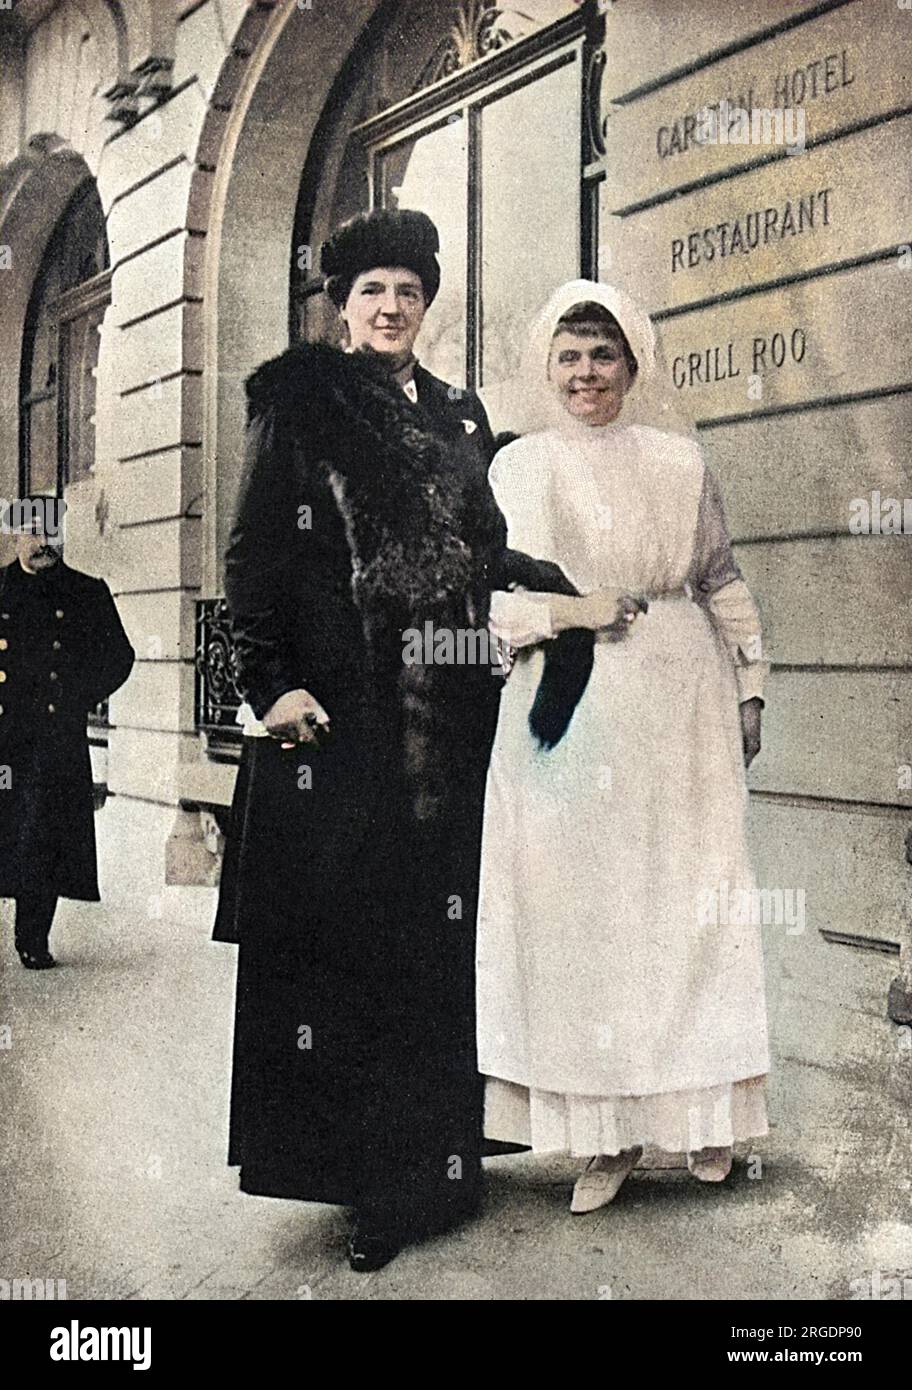 Ein Foto von Königin Amelie von Portugal (links) (1865-1951), in Paris neben Madame Iswolsky, der Frau des russischen Botschafters, gekleidet in einer Krankenschwester-Uniform. Vor dem Carlton Hotel, das WW1 als russisches Krankenhaus genutzt wurde. Stockfoto